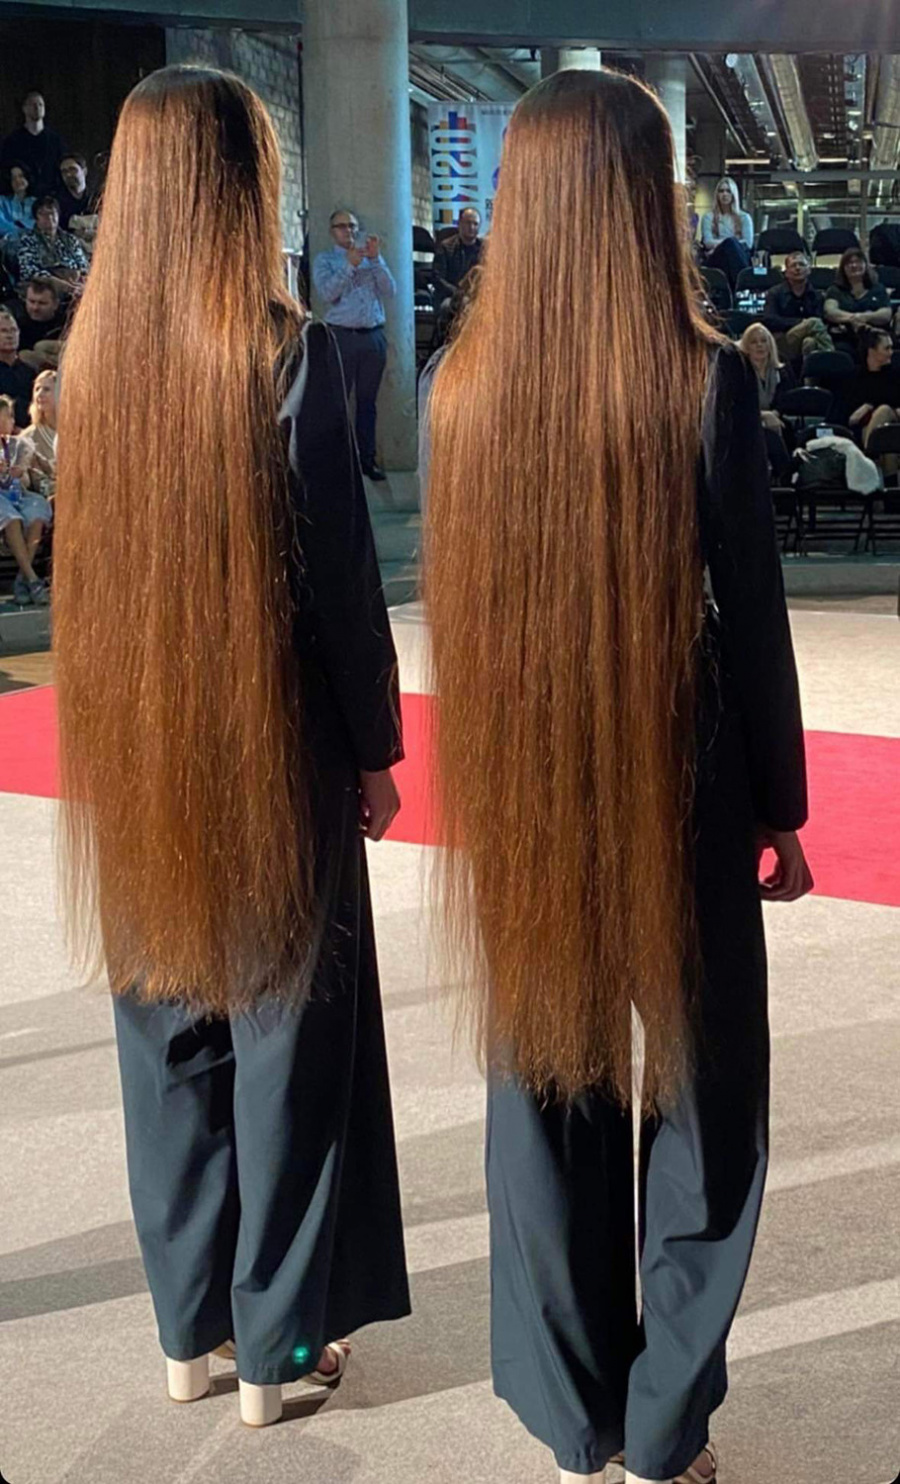 Sesės Skaistė ir Emilė pasiekė naują dar neregistruotą savo amžiaus grupės dvynių ilgiausių plaukų rekordą.